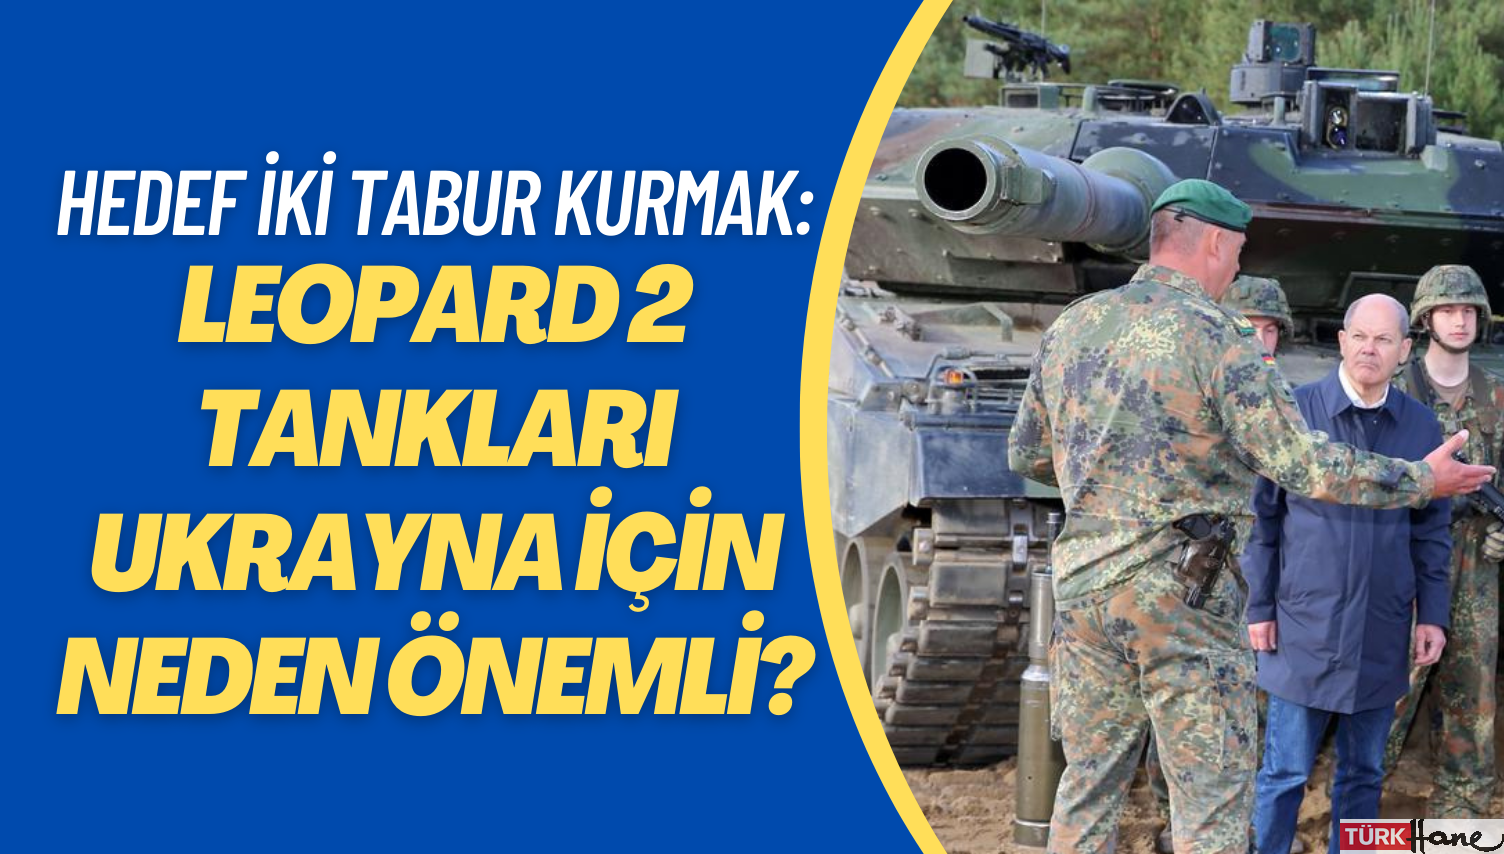 Hedef iki tabur oluşturmak: Leopard 2 tankları Ukrayna için neden önemli?